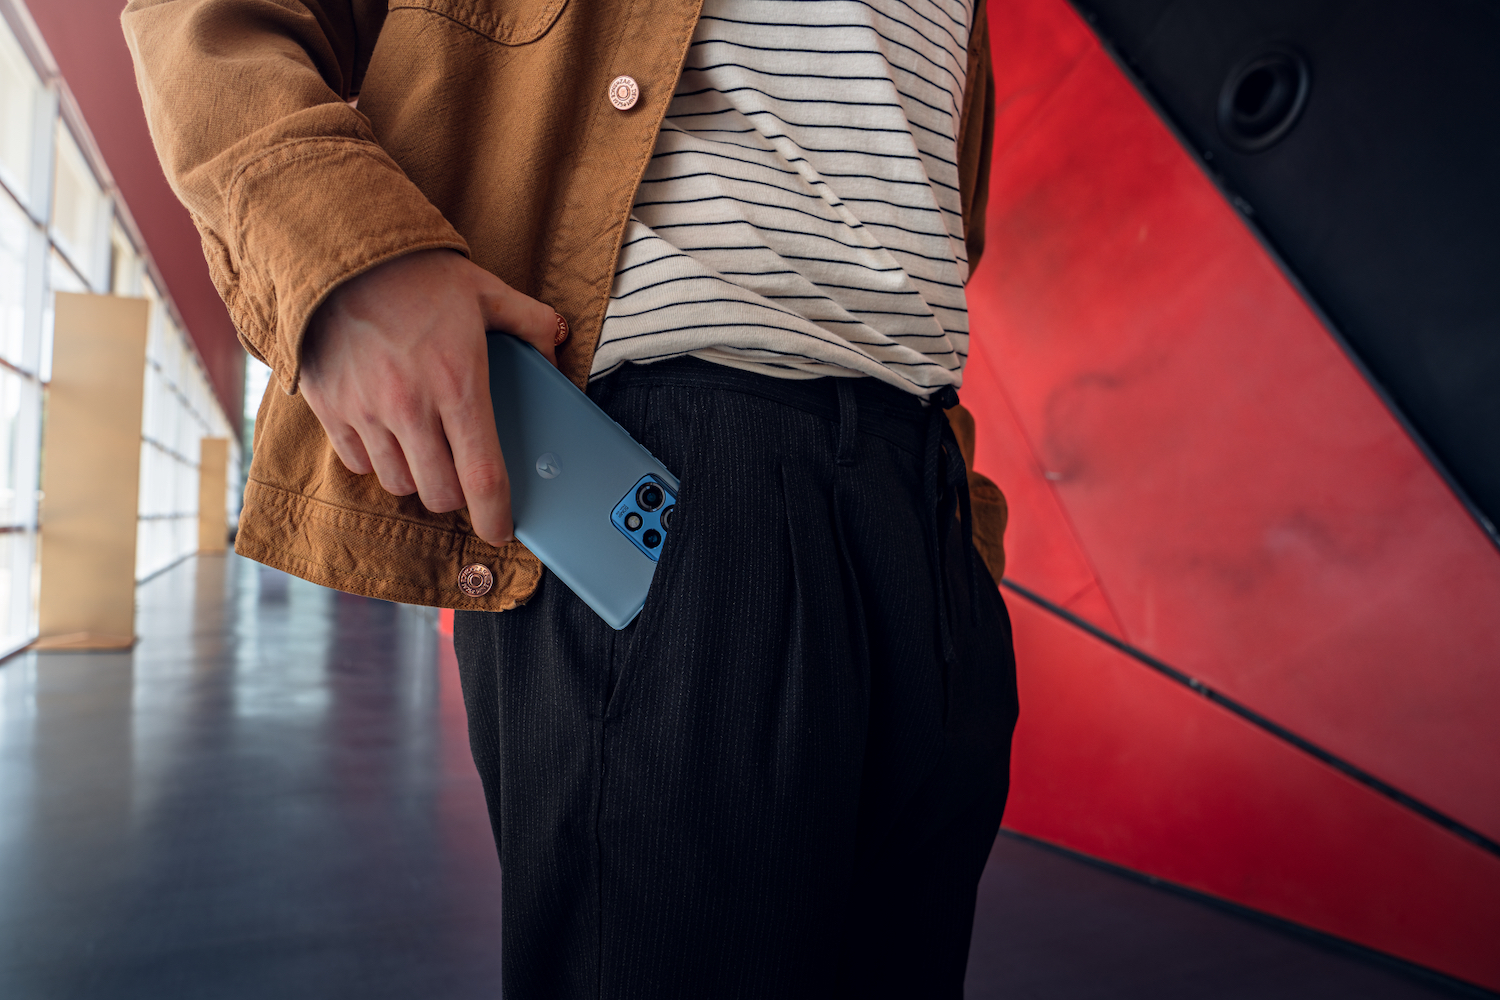 एक प्रचारात्मक छवि जिसमें एक व्यक्ति मोटोरोला एज 40 प्रो को अपनी जेब में रखते हुए दिखा रहा है।